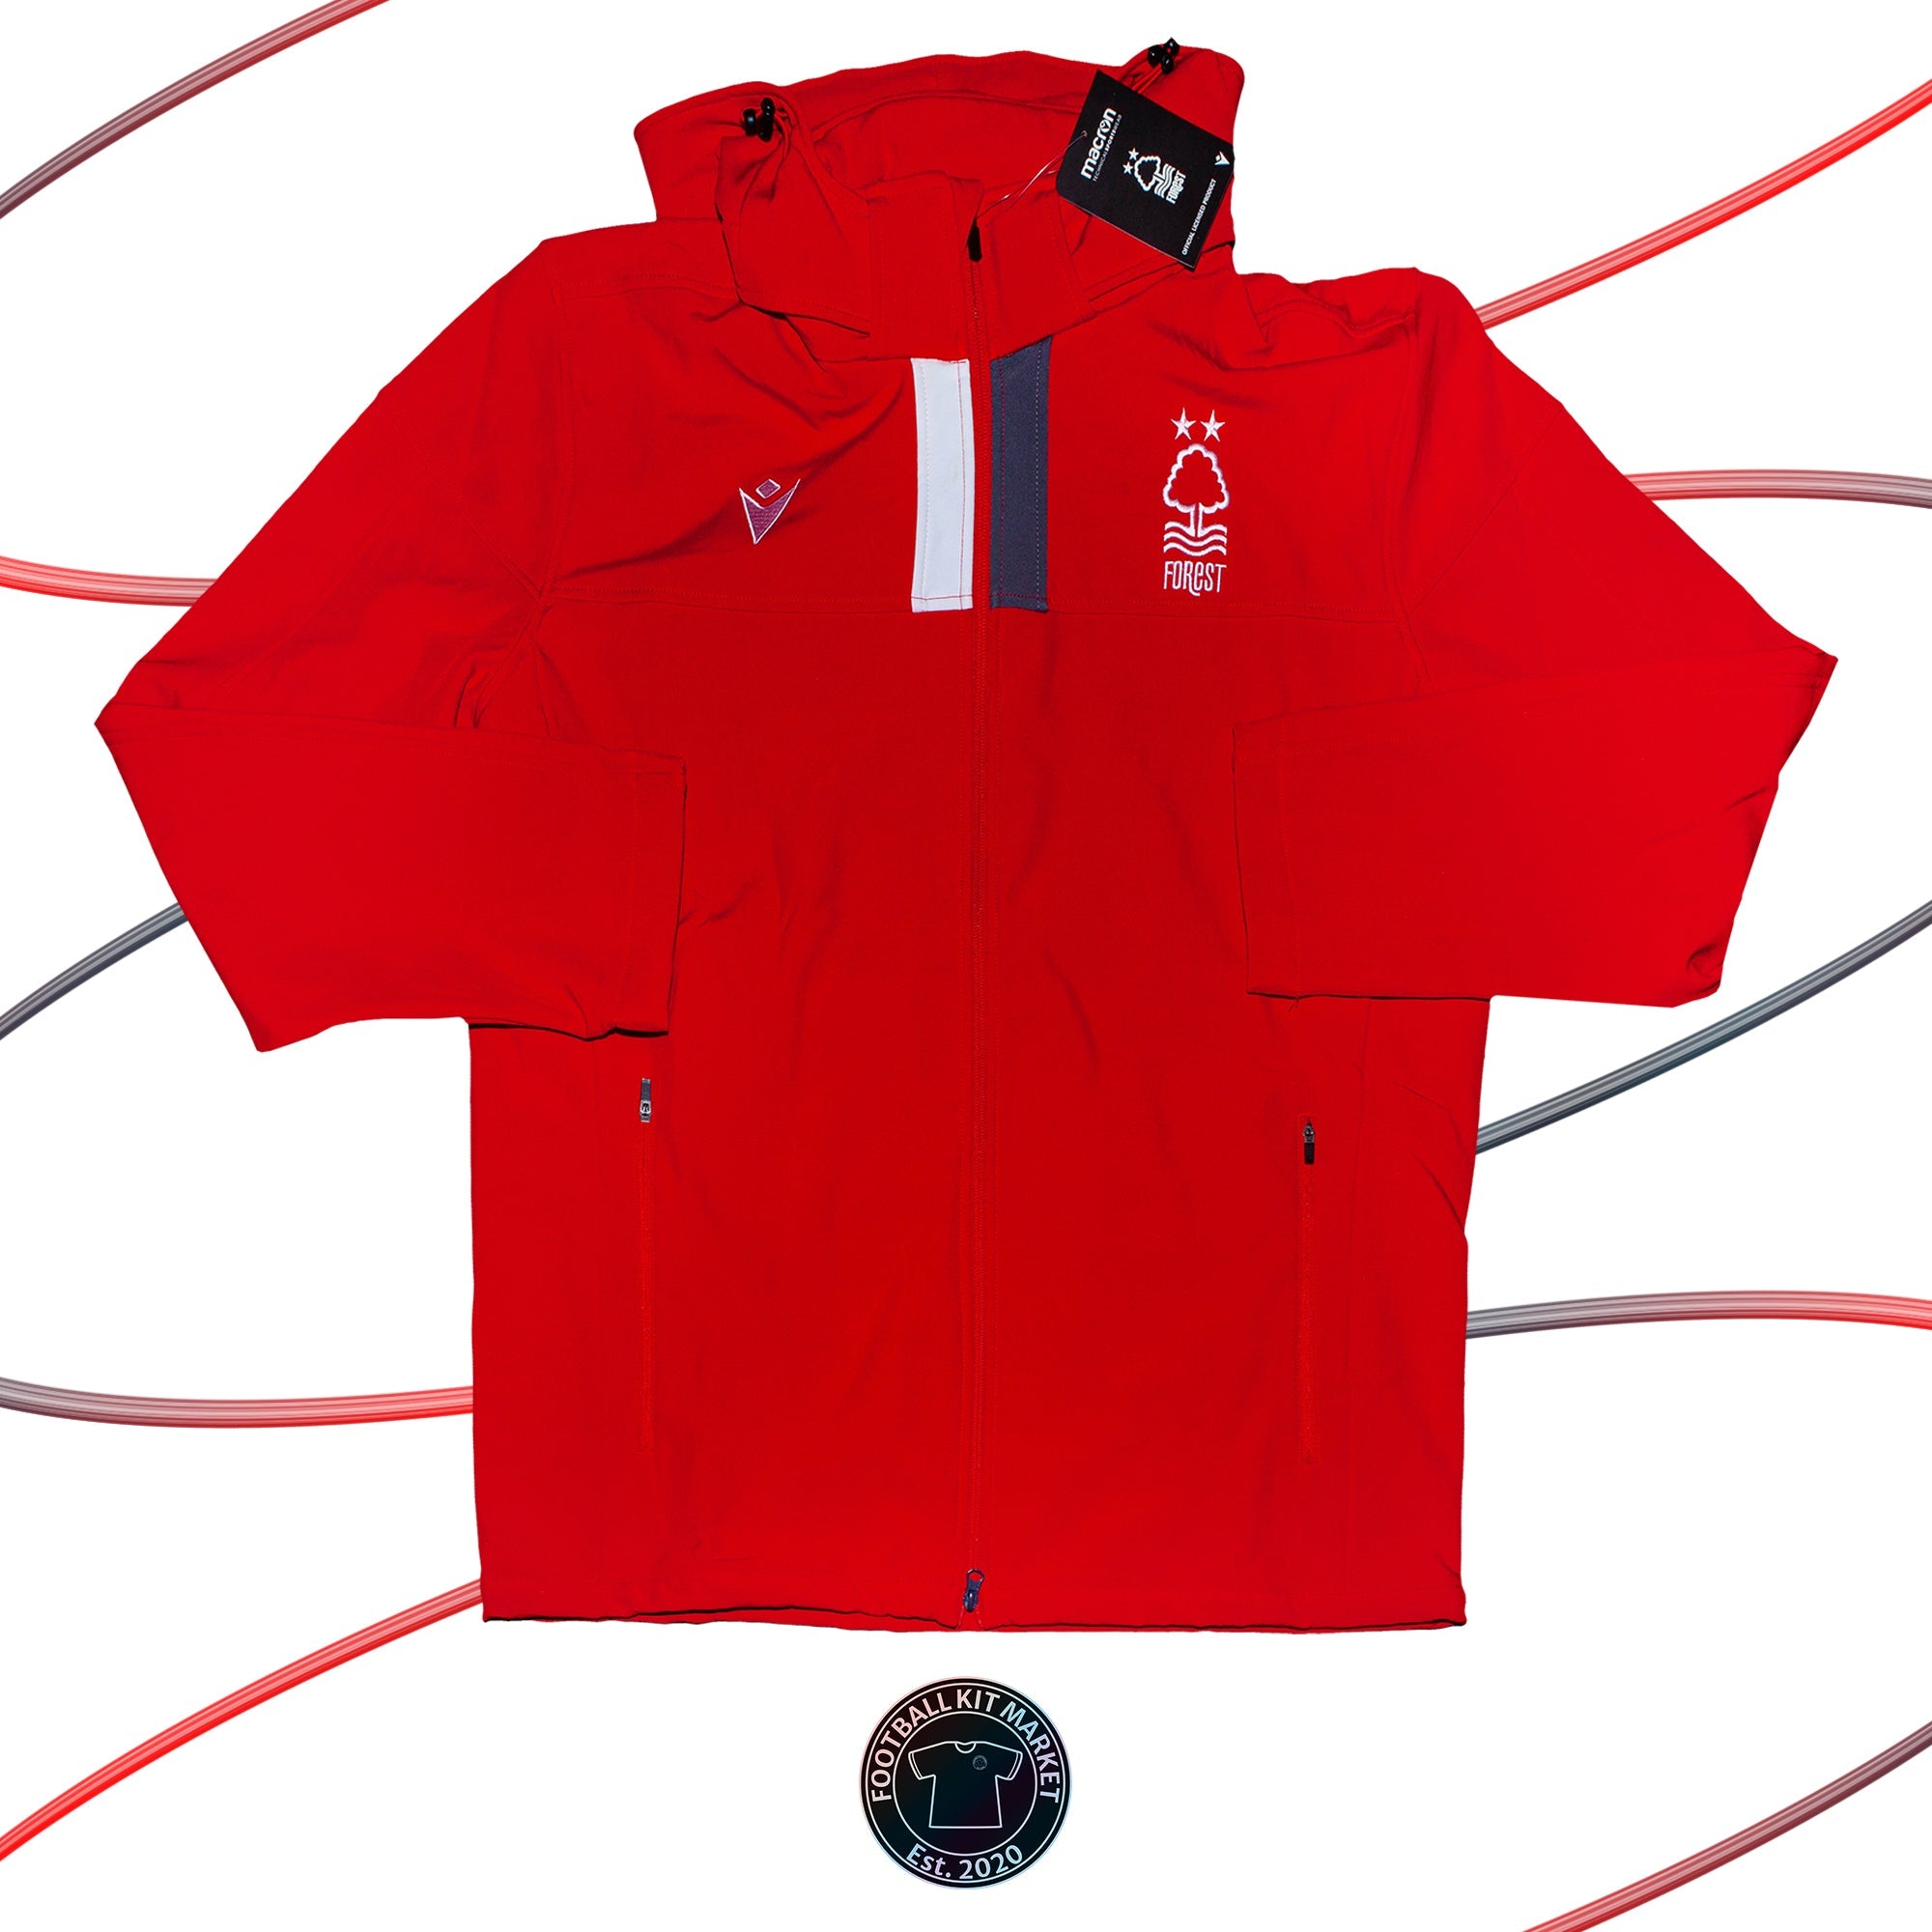 Genuine NOTTINGHAM FOREST Coat (2019/20) - MACRON (4 XL) - Product Image from Football Kit Market